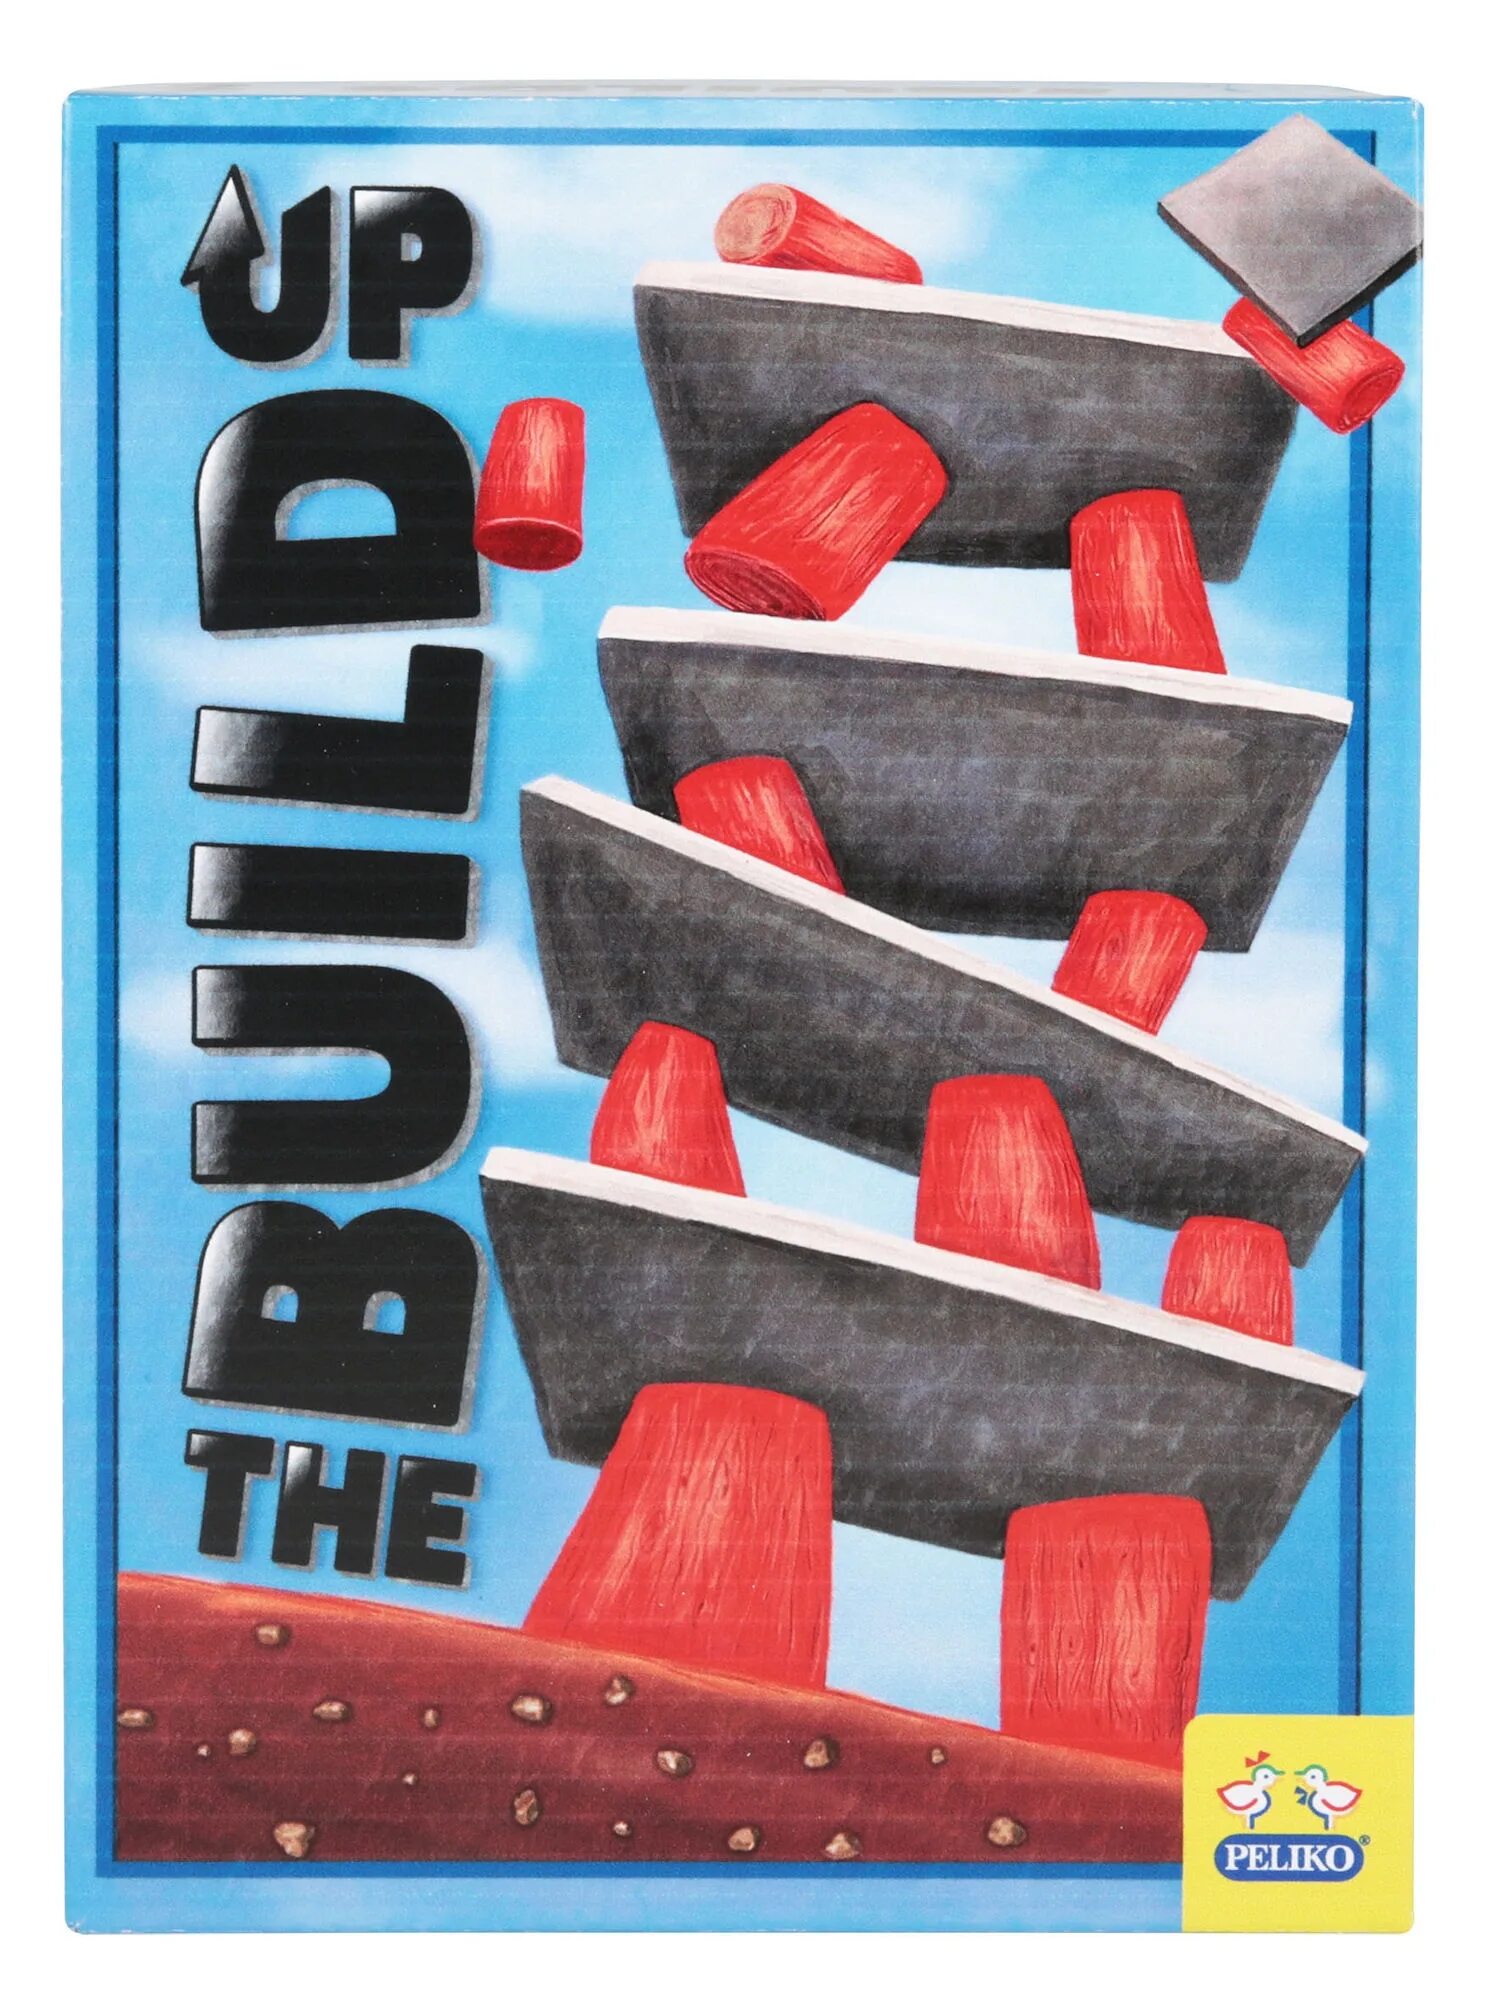 Build up игра. Вверх (игра) обложка. Игра up and down для детей. Up games отзывы